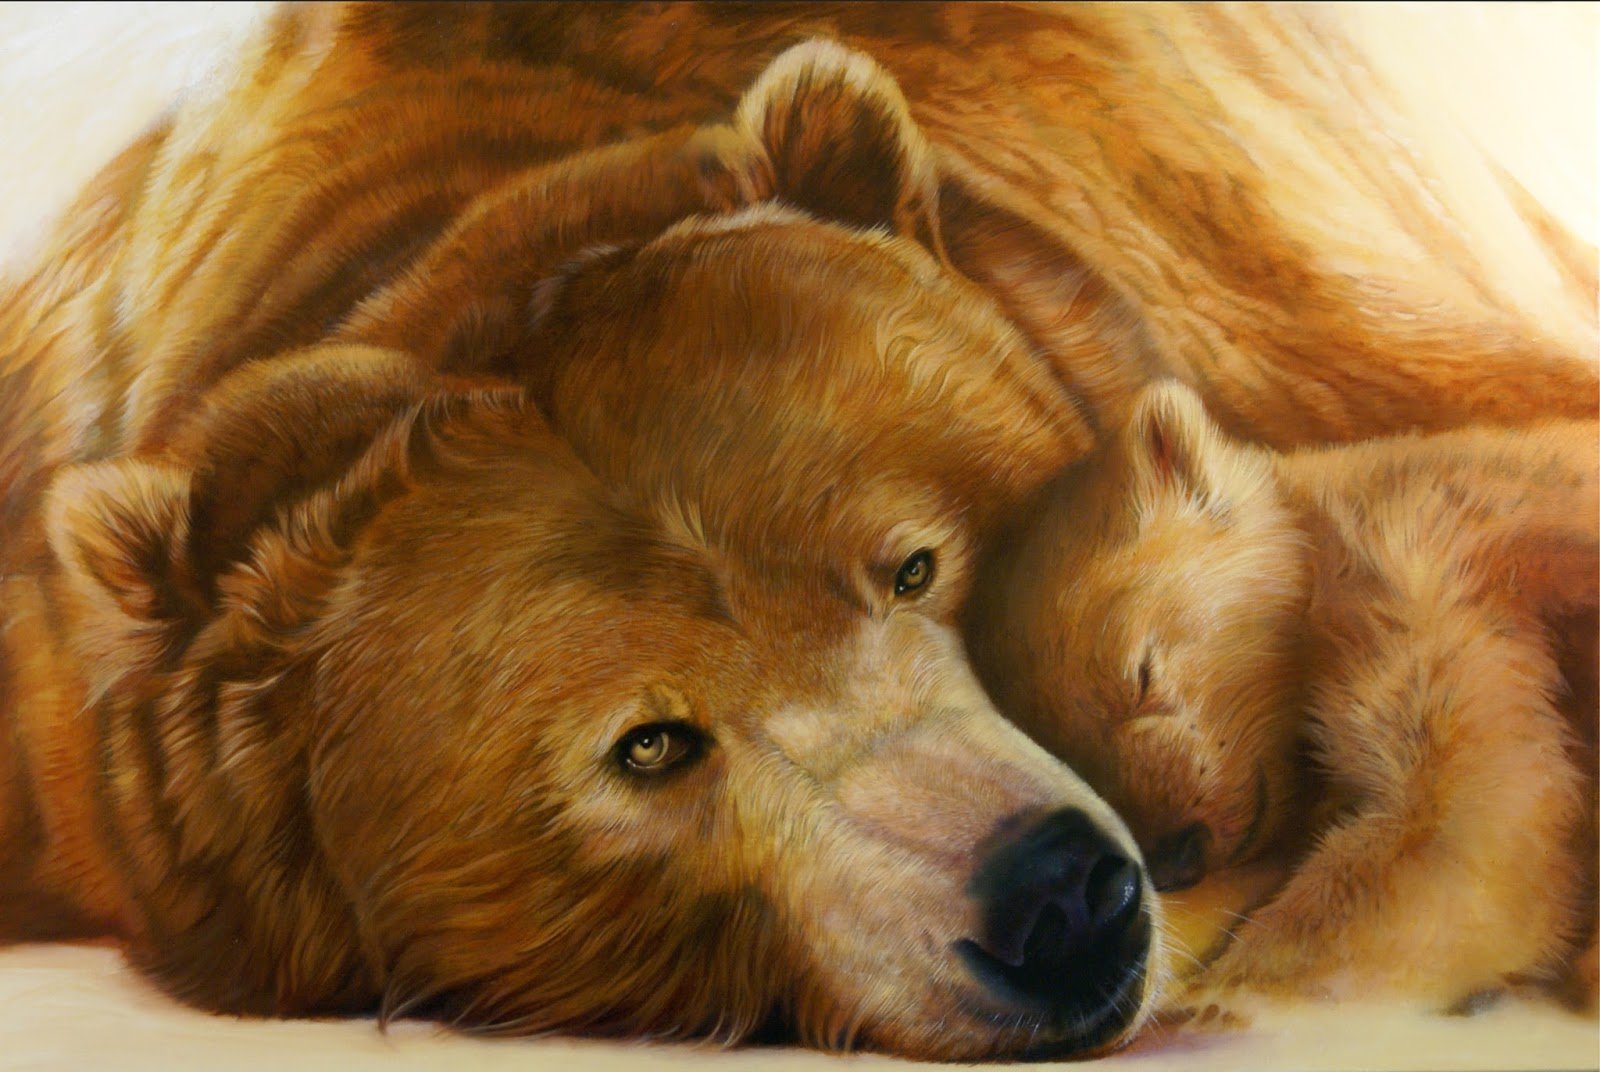 Animal johns. Карандаши цветные "животные". Картина медведь. Картины с изображением медведей. Картина семья медведей.